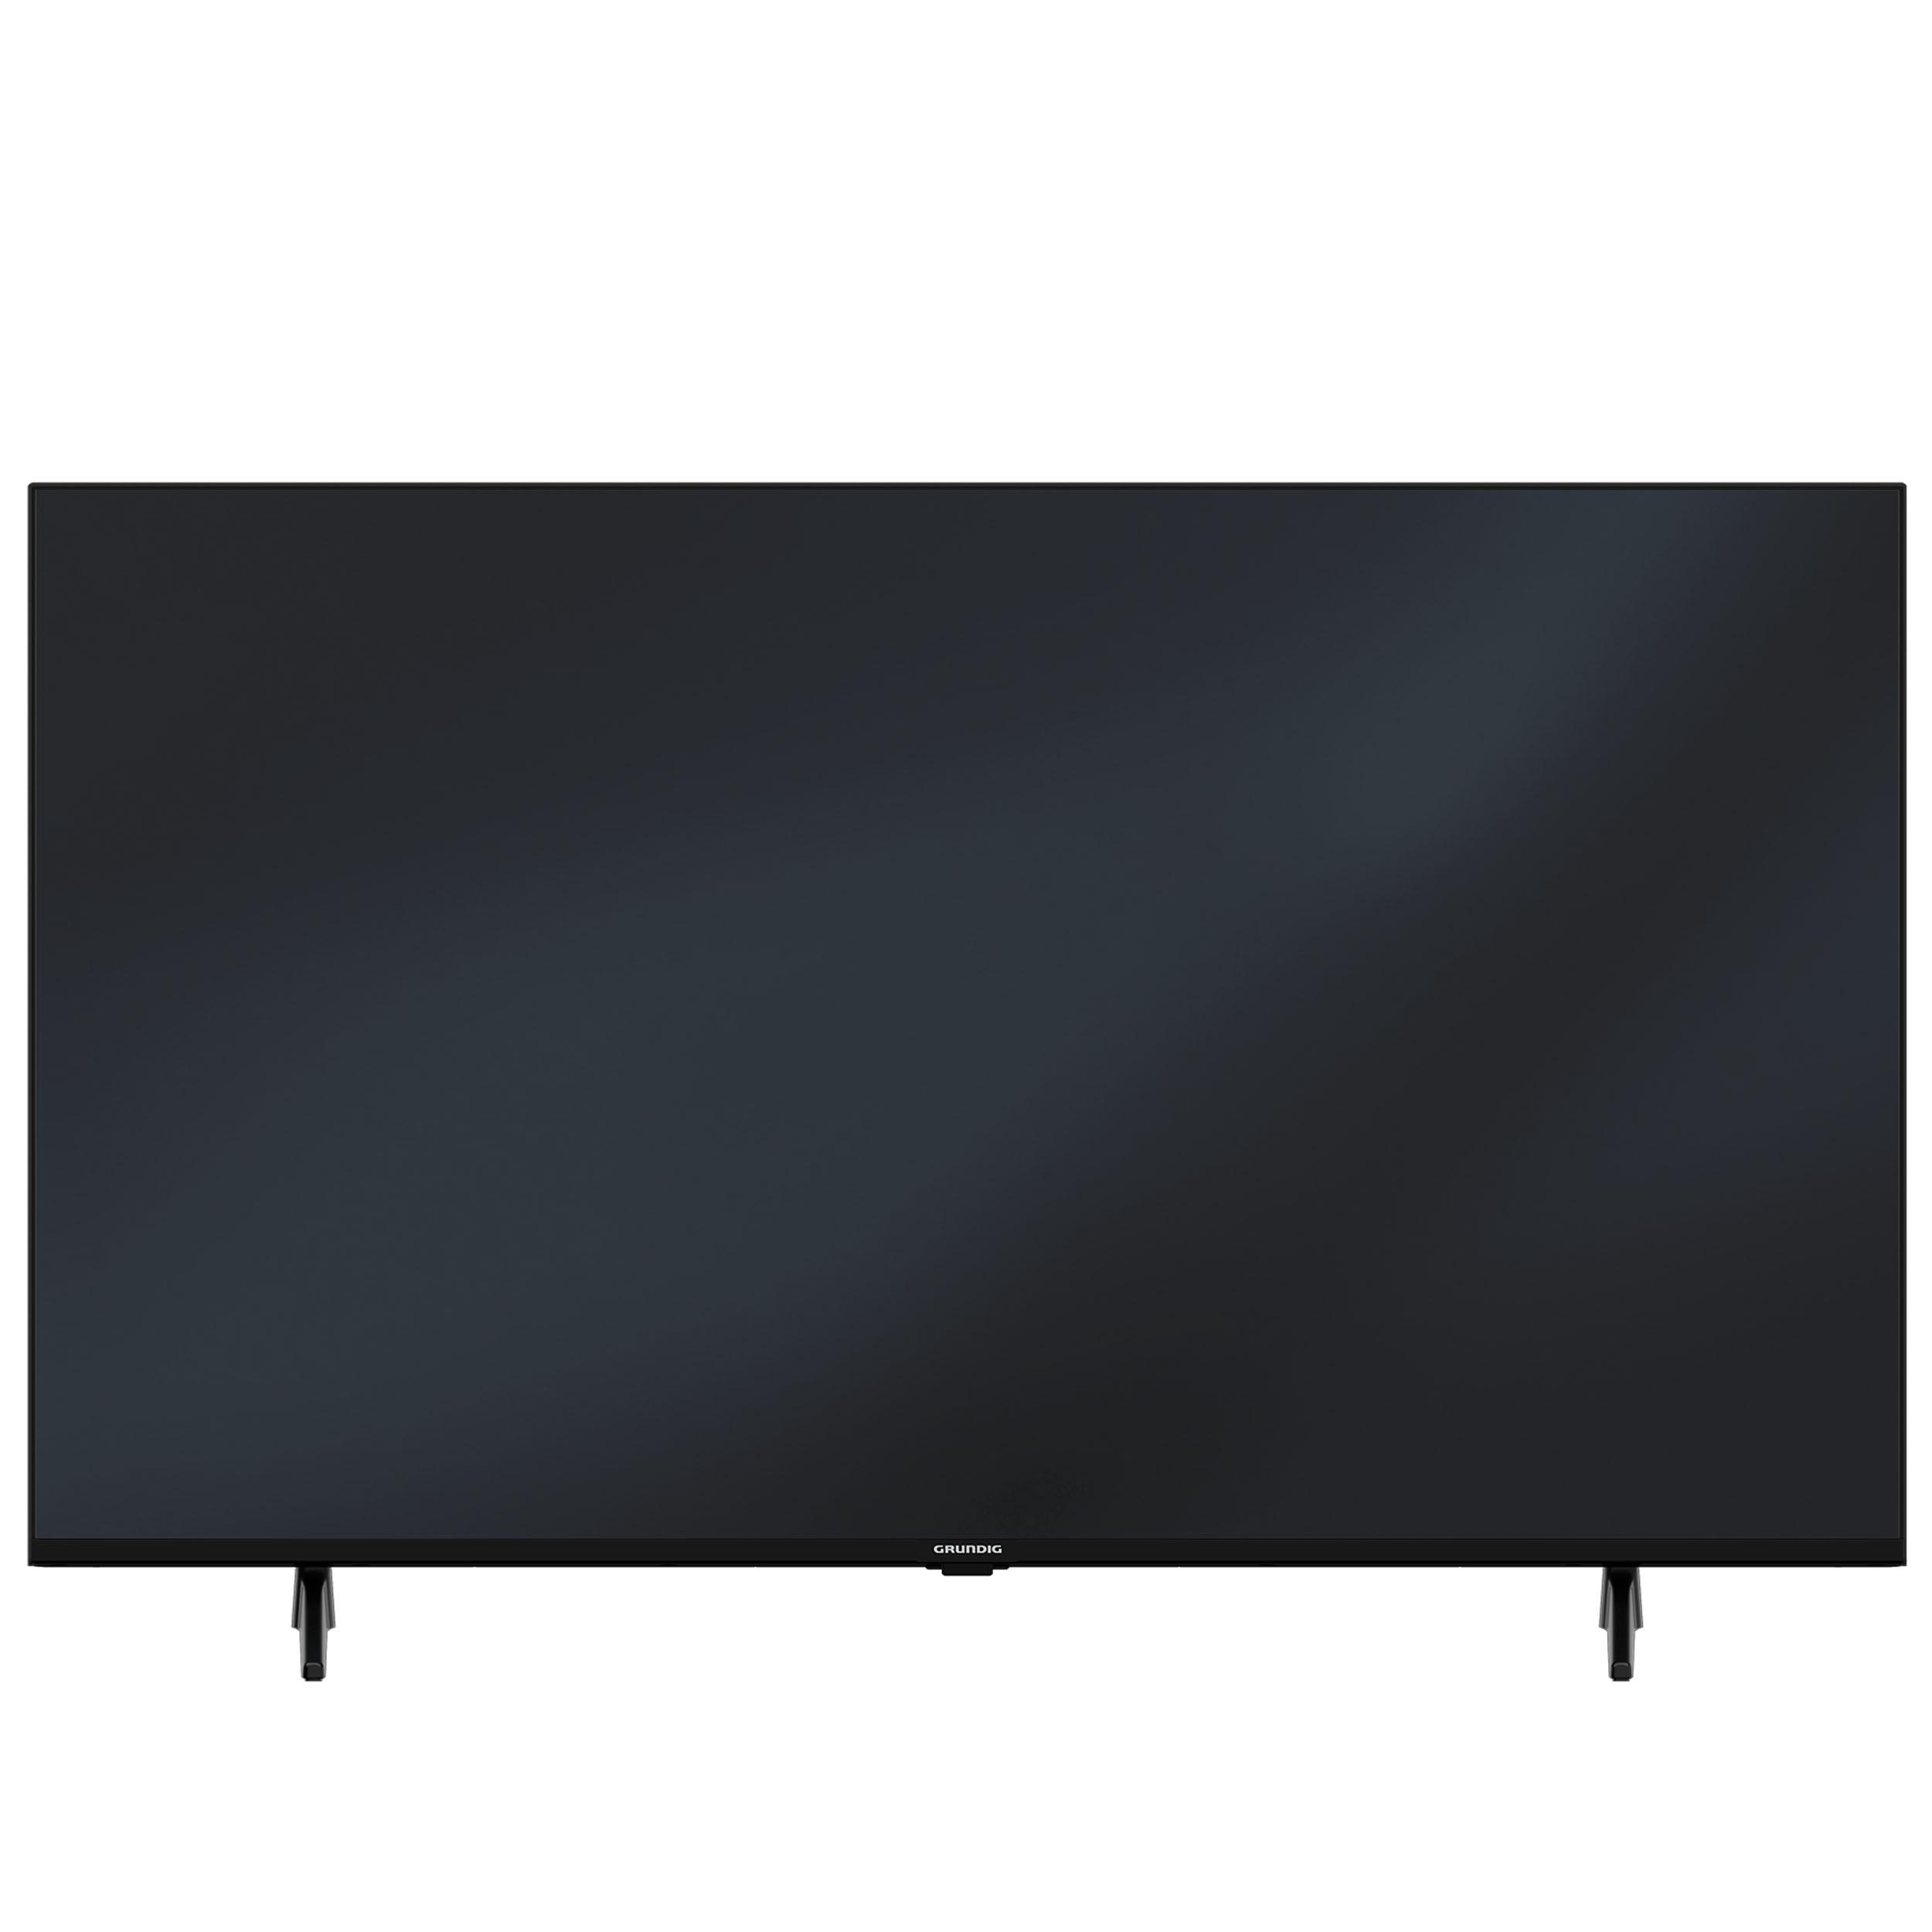 GRUNDIG 75 VCE SMART UHD Android 223 TV, / 11) (75 4K, Smart TV Zoll 189 cm